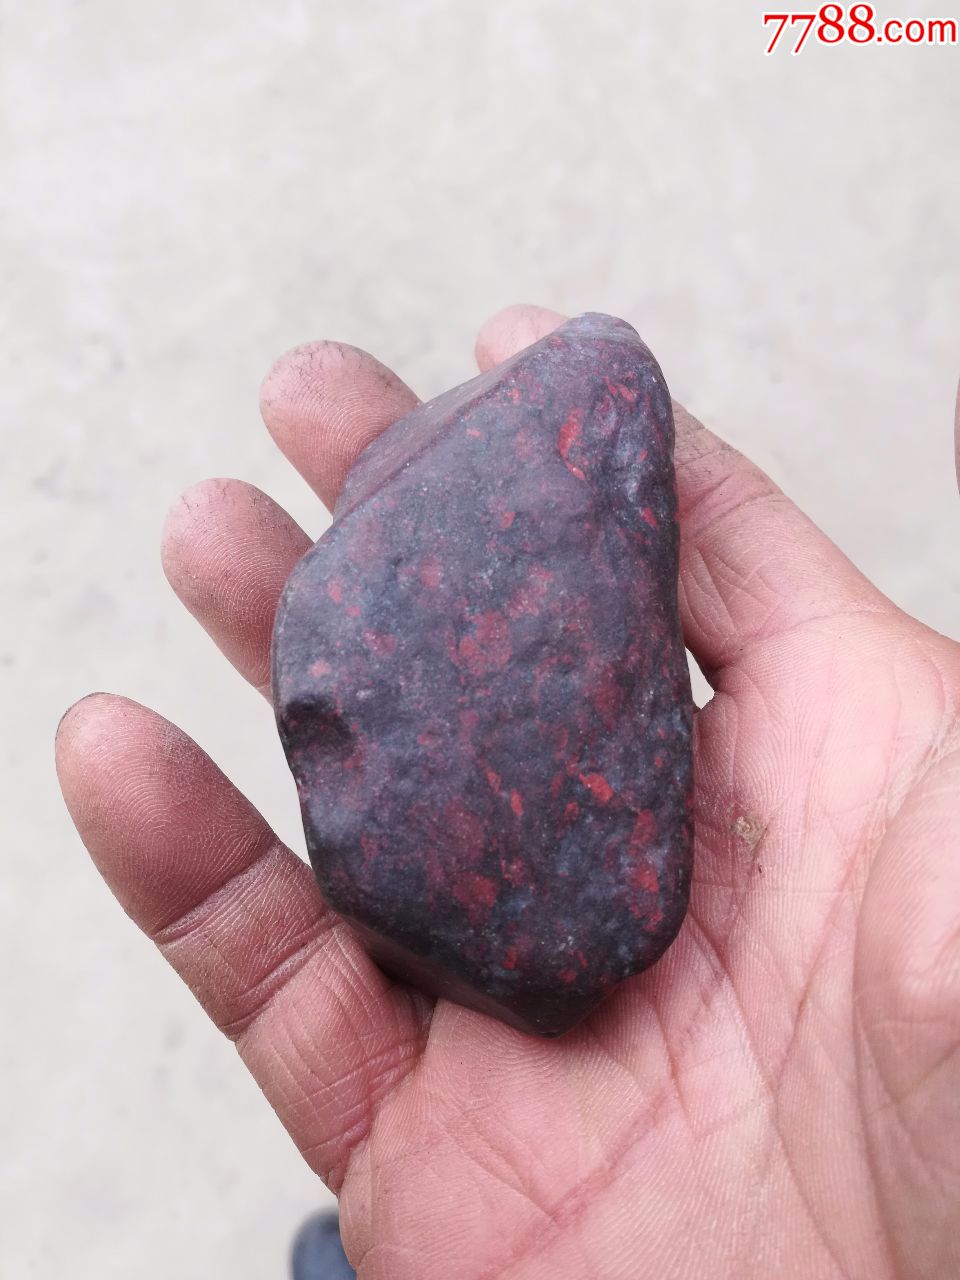 奇石;陨石一块红色直径8厘米*5厘米*4厘米重193克